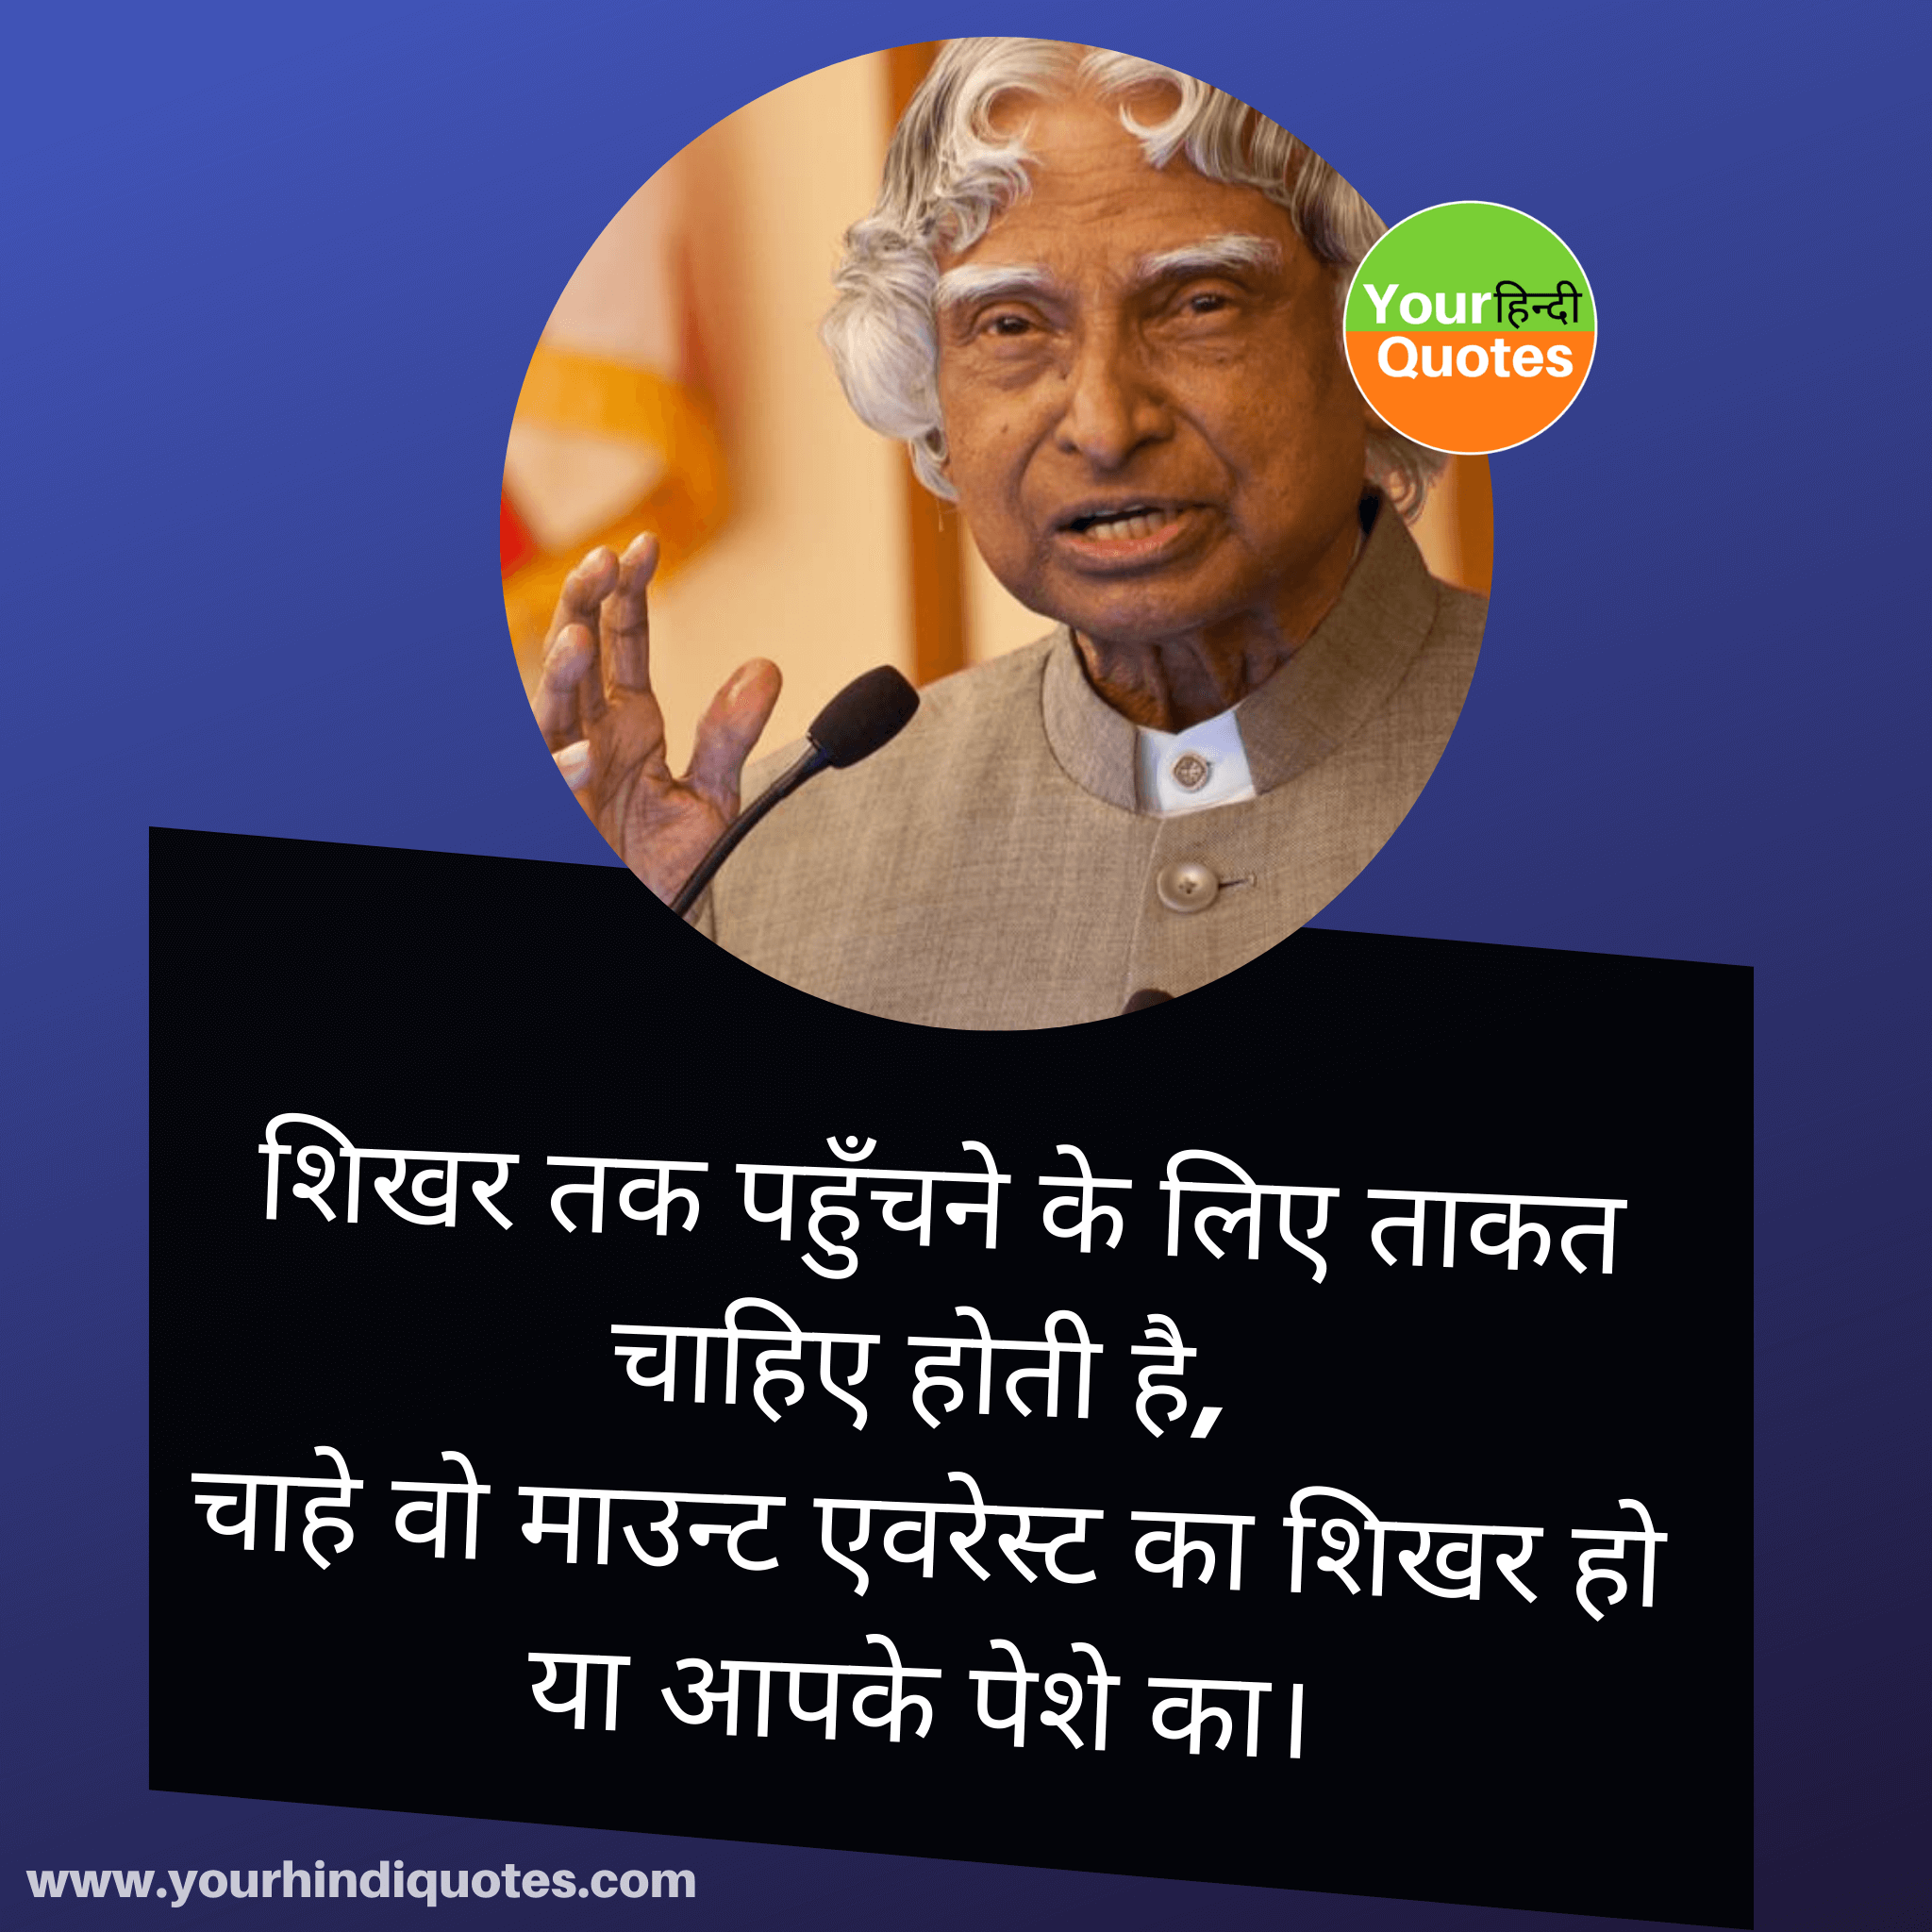 APJ Abdul Kalam Quotes in Hindi